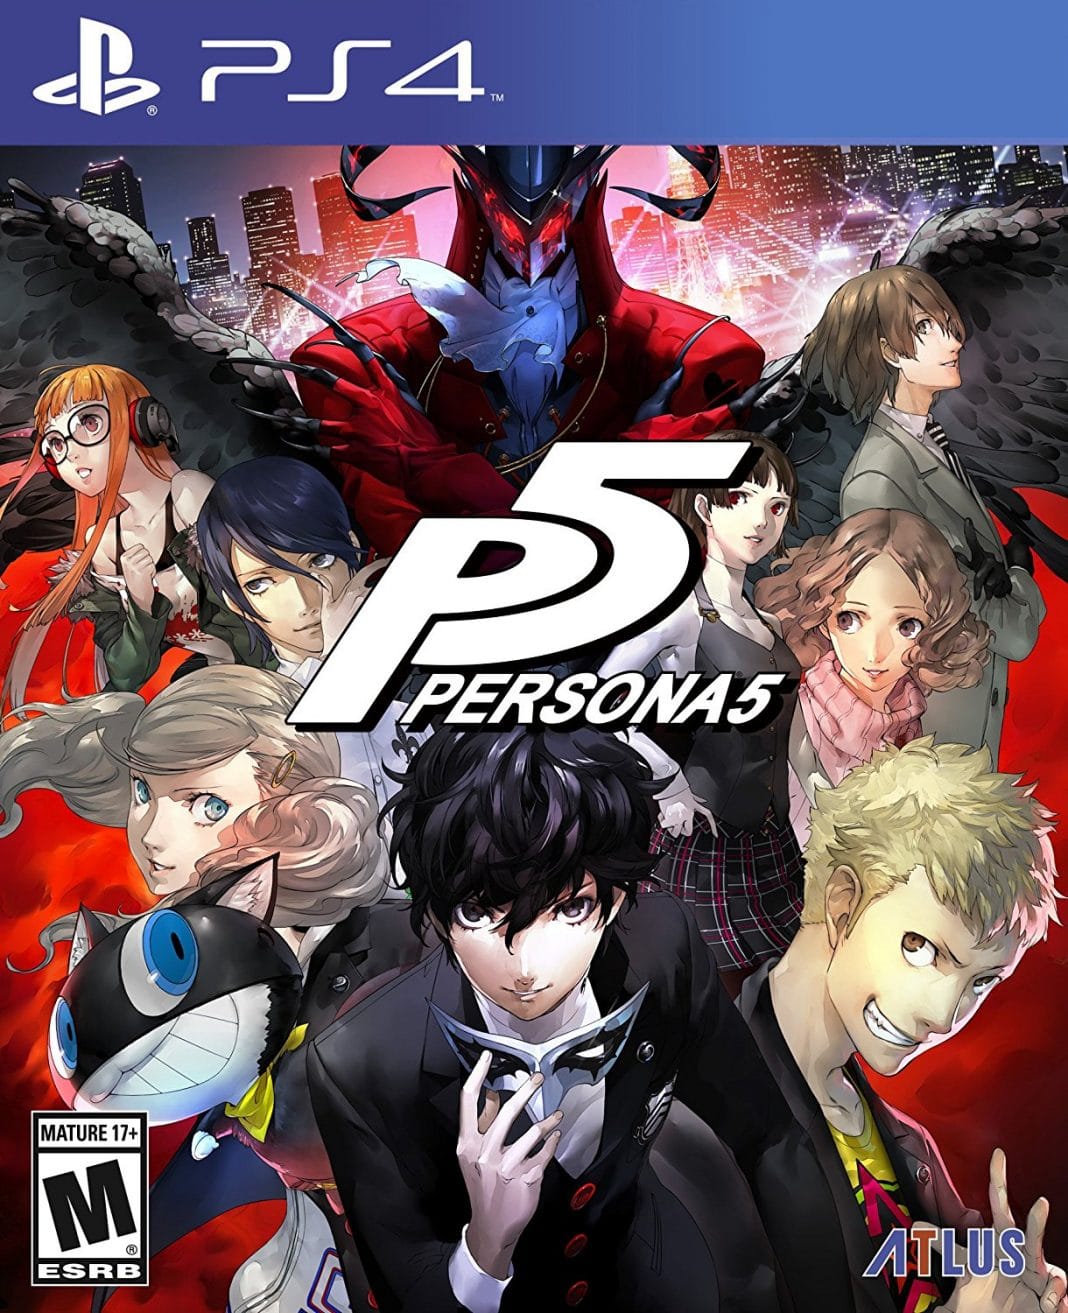 Persona 5 top 10 ps4 games